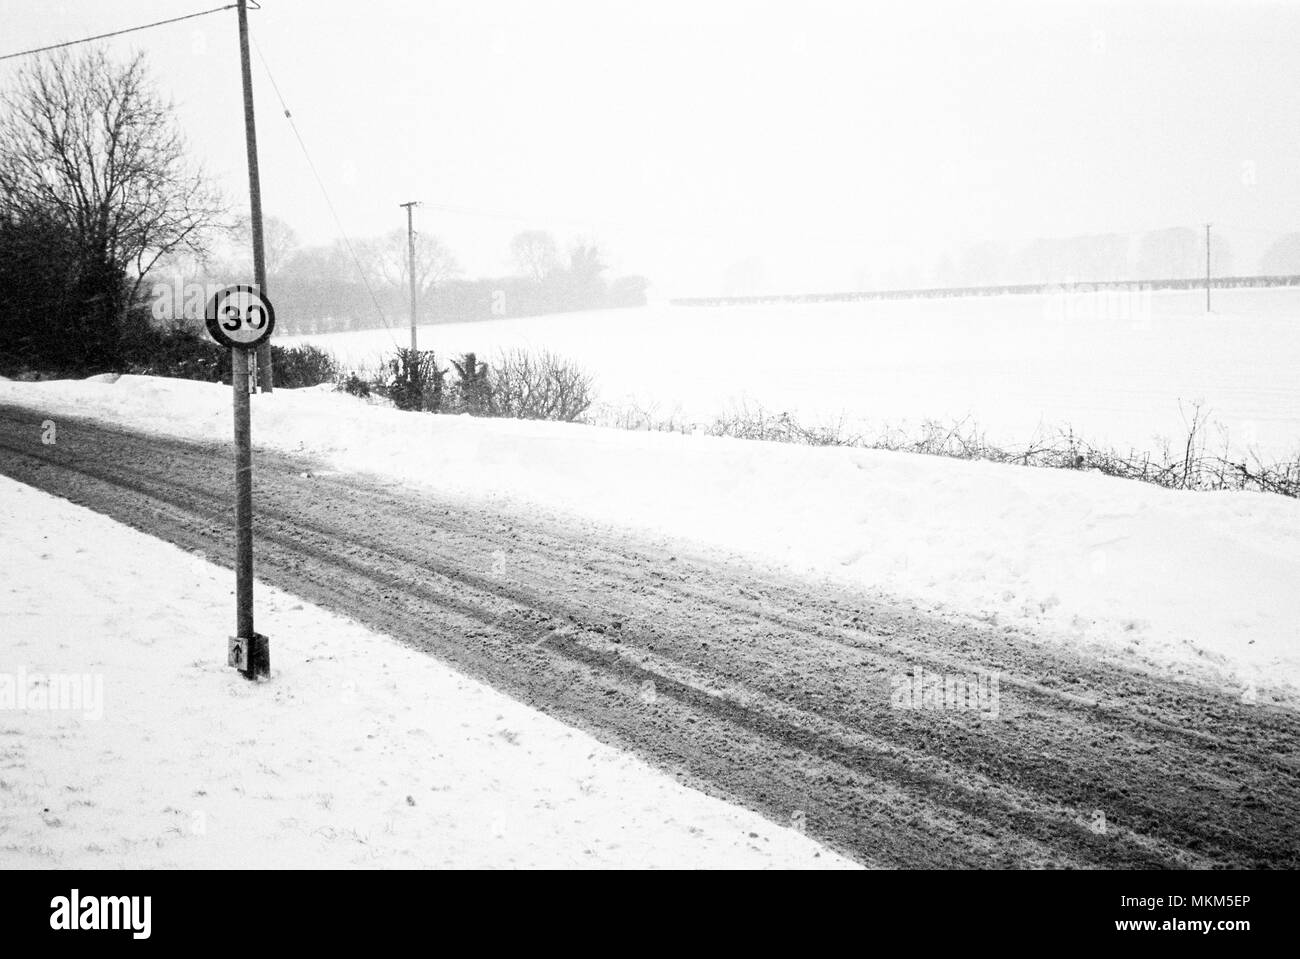 La neige fond Lymington Road, Medstead, Alton, Hampshire, Angleterre, Royaume-Uni. Banque D'Images